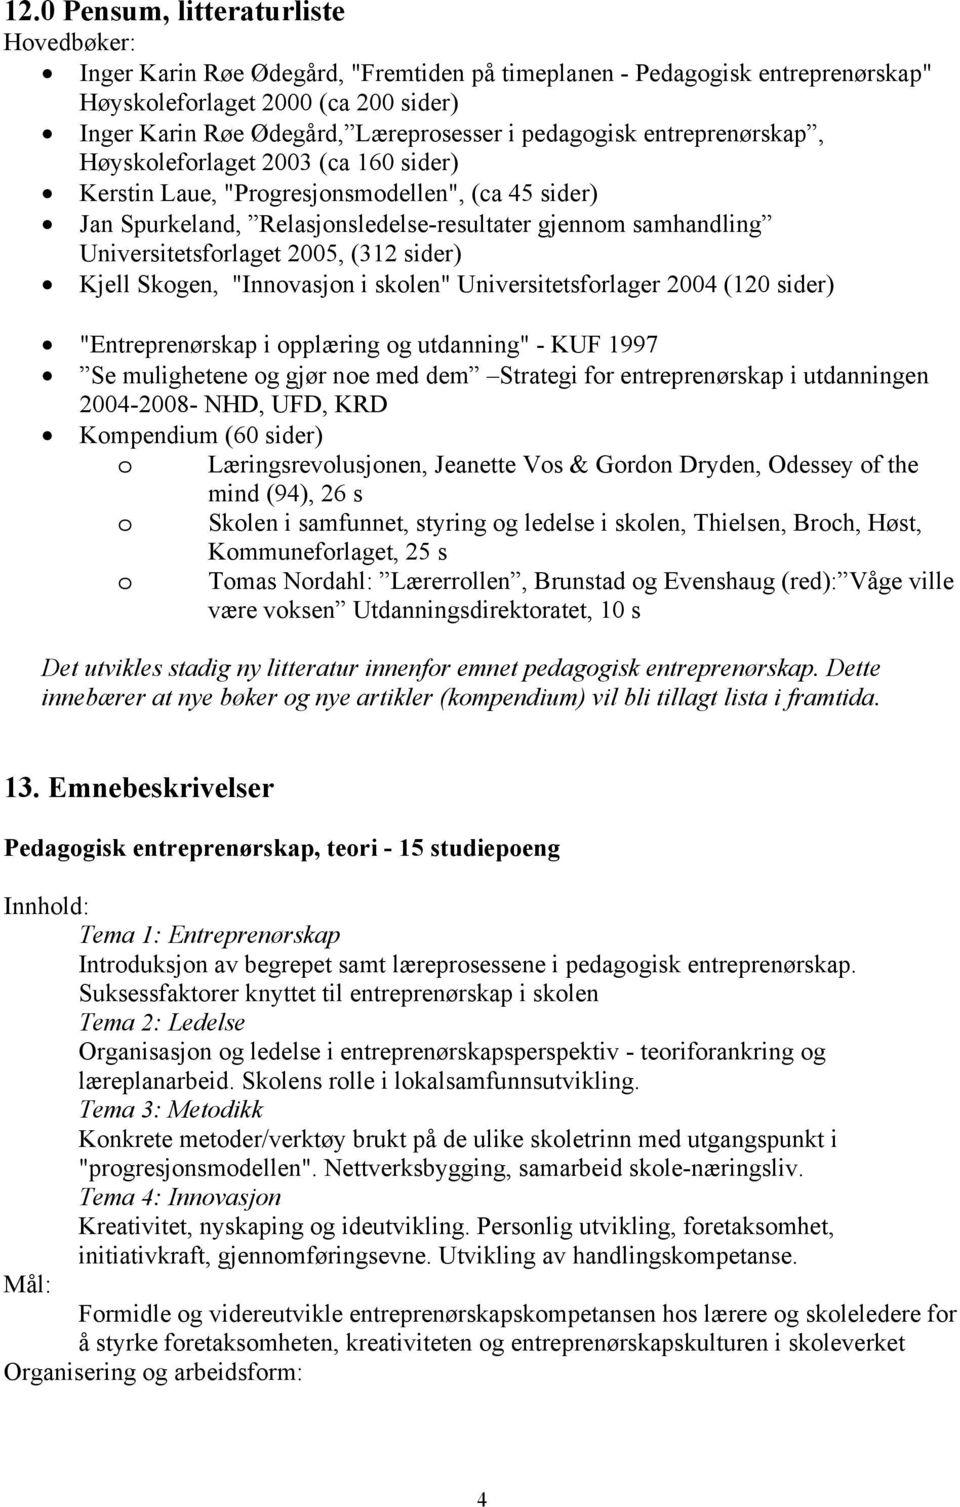 Universitetsforlaget 2005, (312 sider) Kjell Skogen, "Innovasjon i skolen" Universitetsforlager 2004 (120 sider) "Entreprenørskap i opplæring og utdanning" - KUF 1997 Se mulighetene og gjør noe med